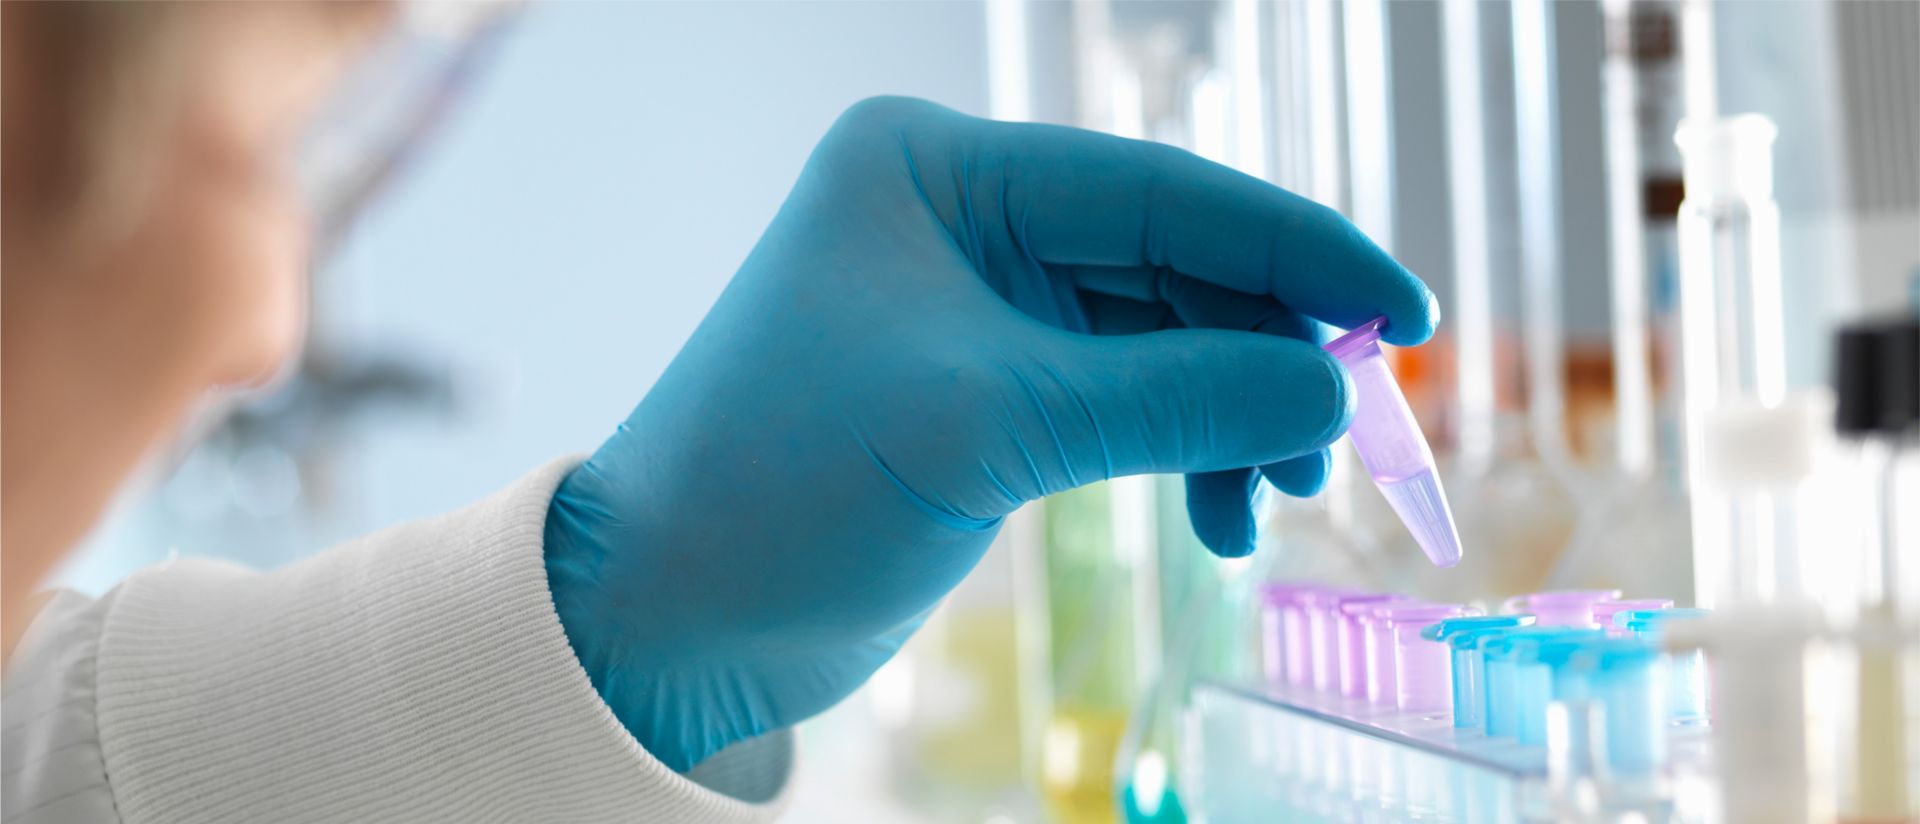 Фотография пипеток с синим химическим веществом, используемым компанией медико-биологической отрасли